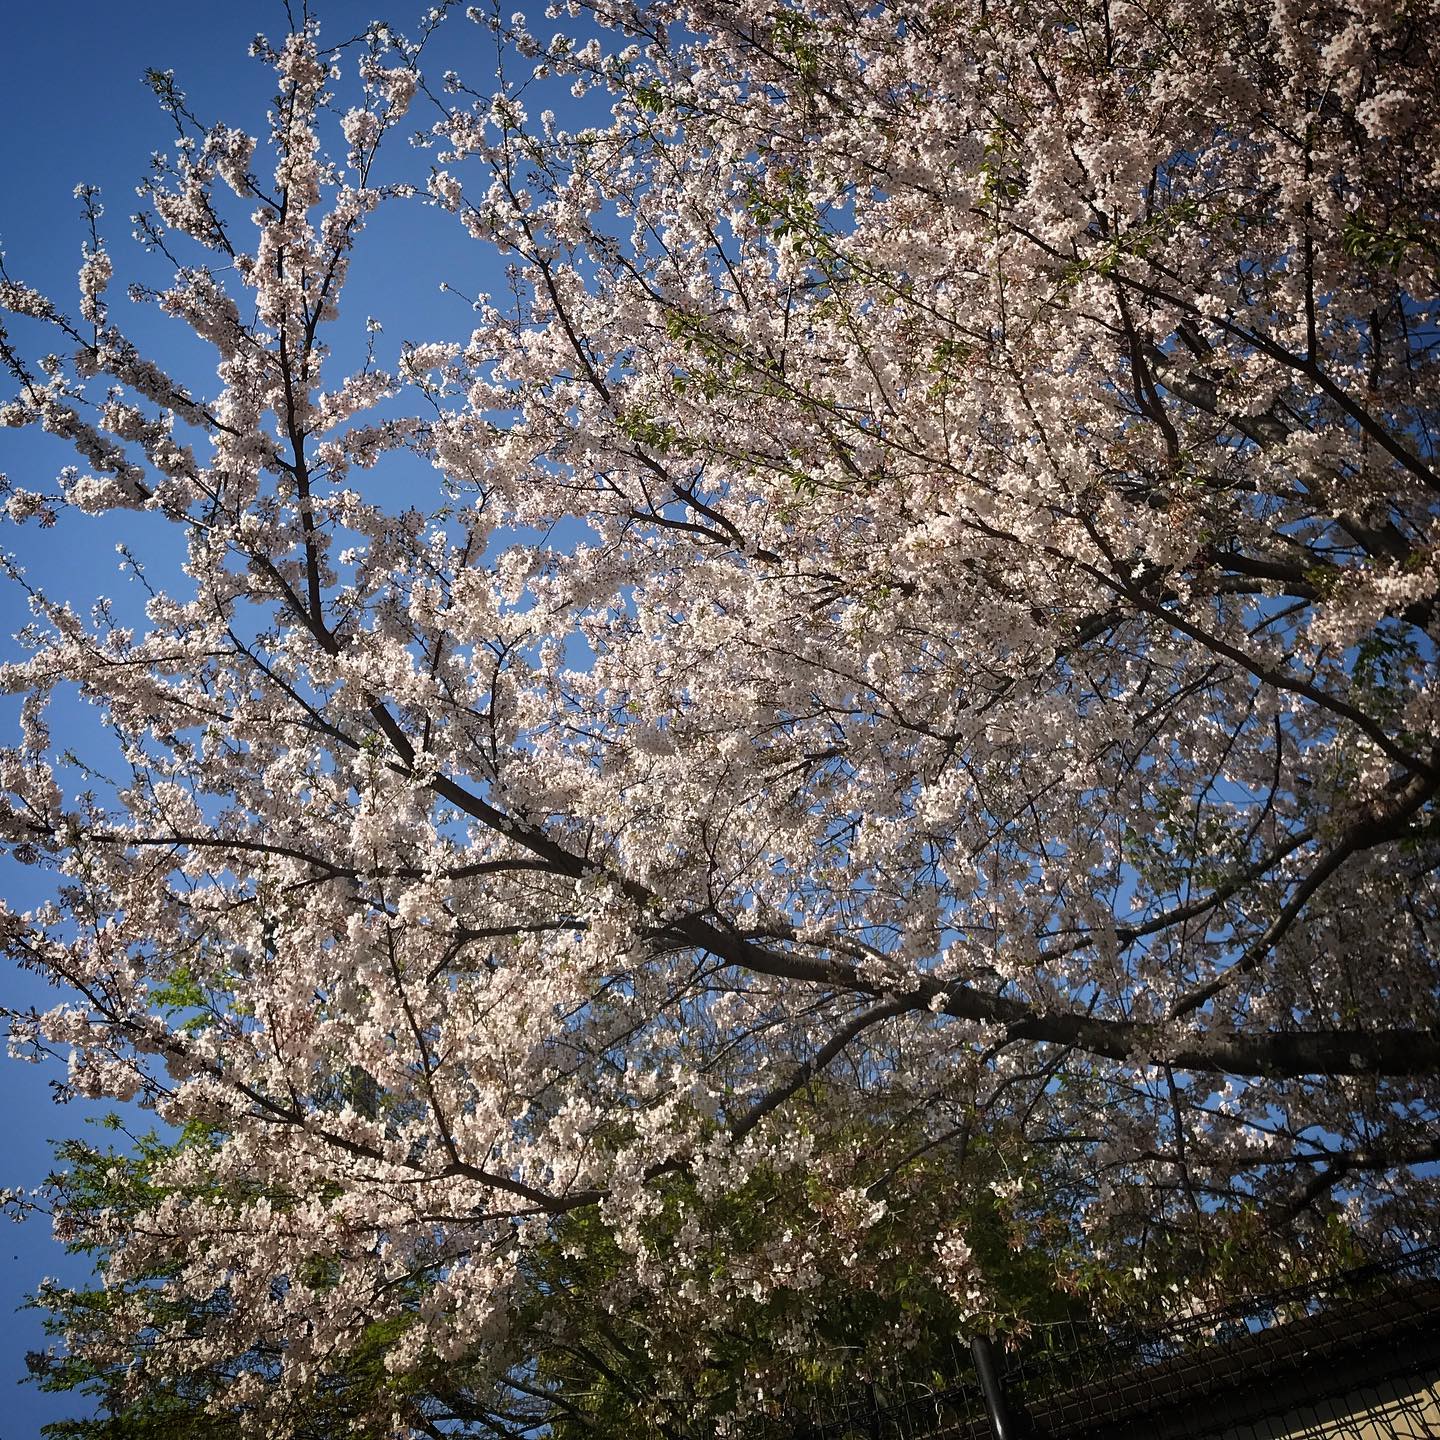 通りすがりに柵の外からお花見誰も見ていなくても花は咲くのよね。🏻#cherryblossom #walking #shinjuku #tokyo #stayhome #sky 